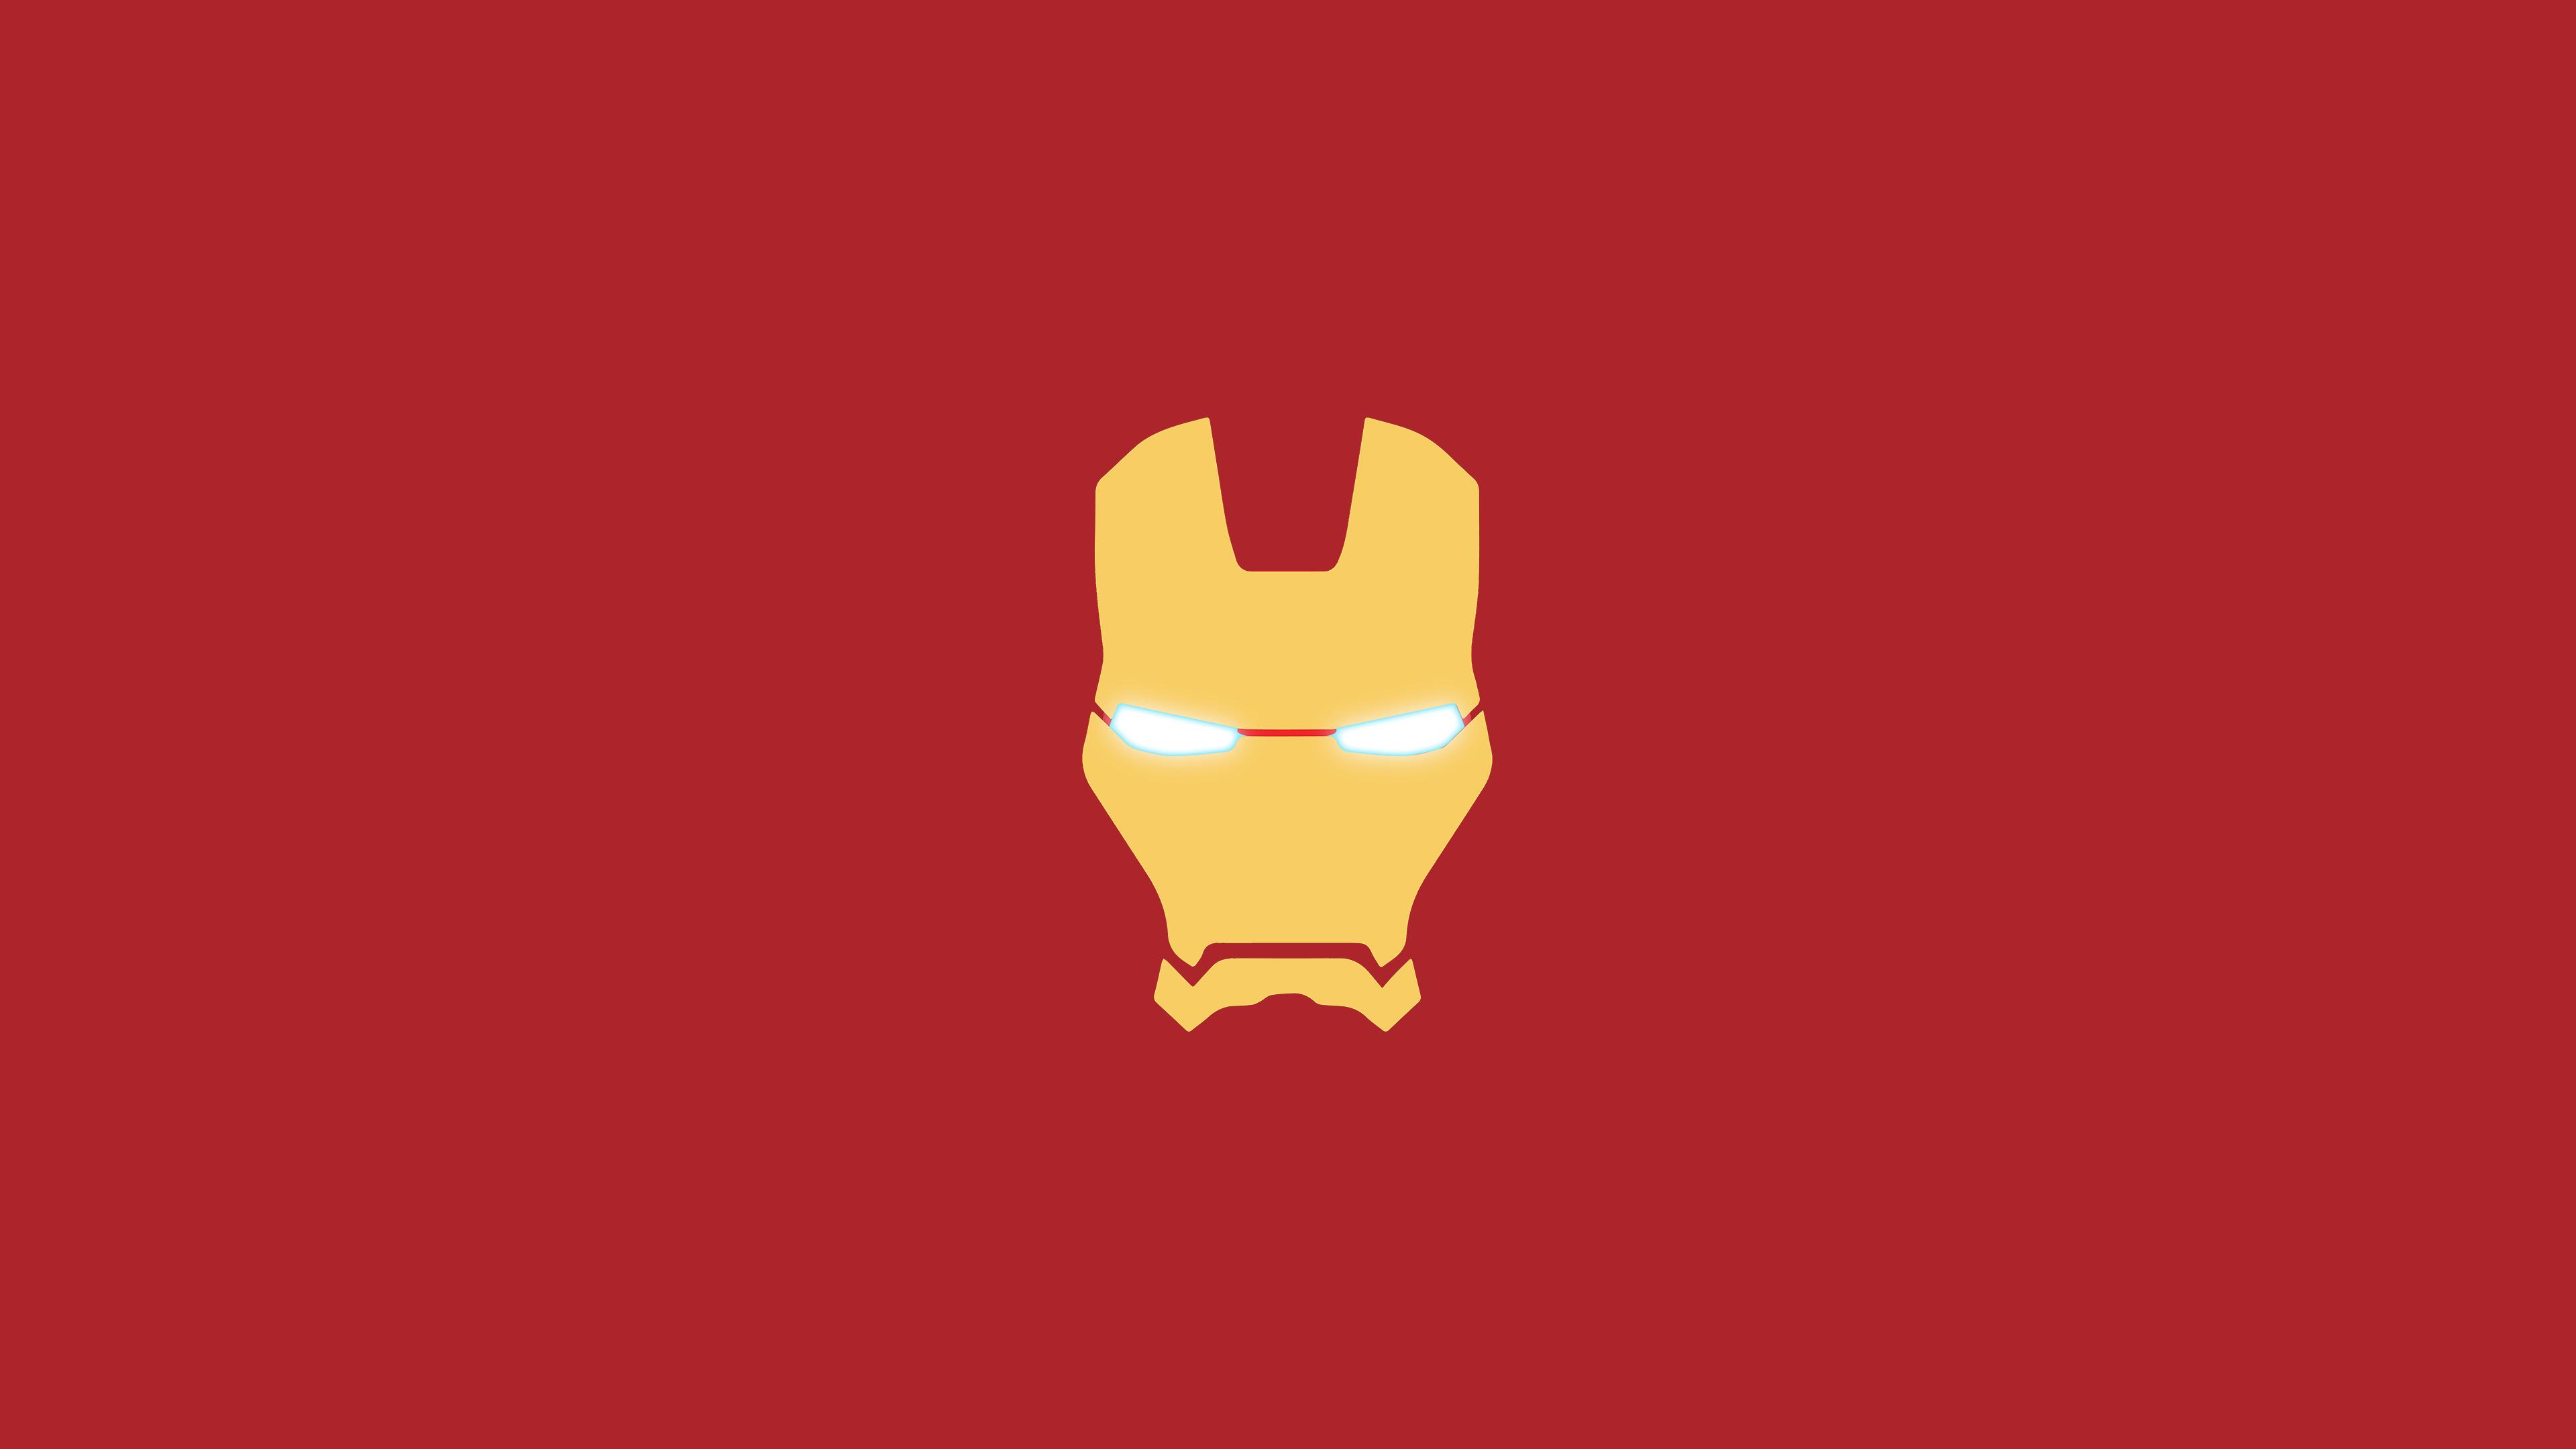 Iron Man Mask Minimal, HD Logo, 4k Wallpaper, Image